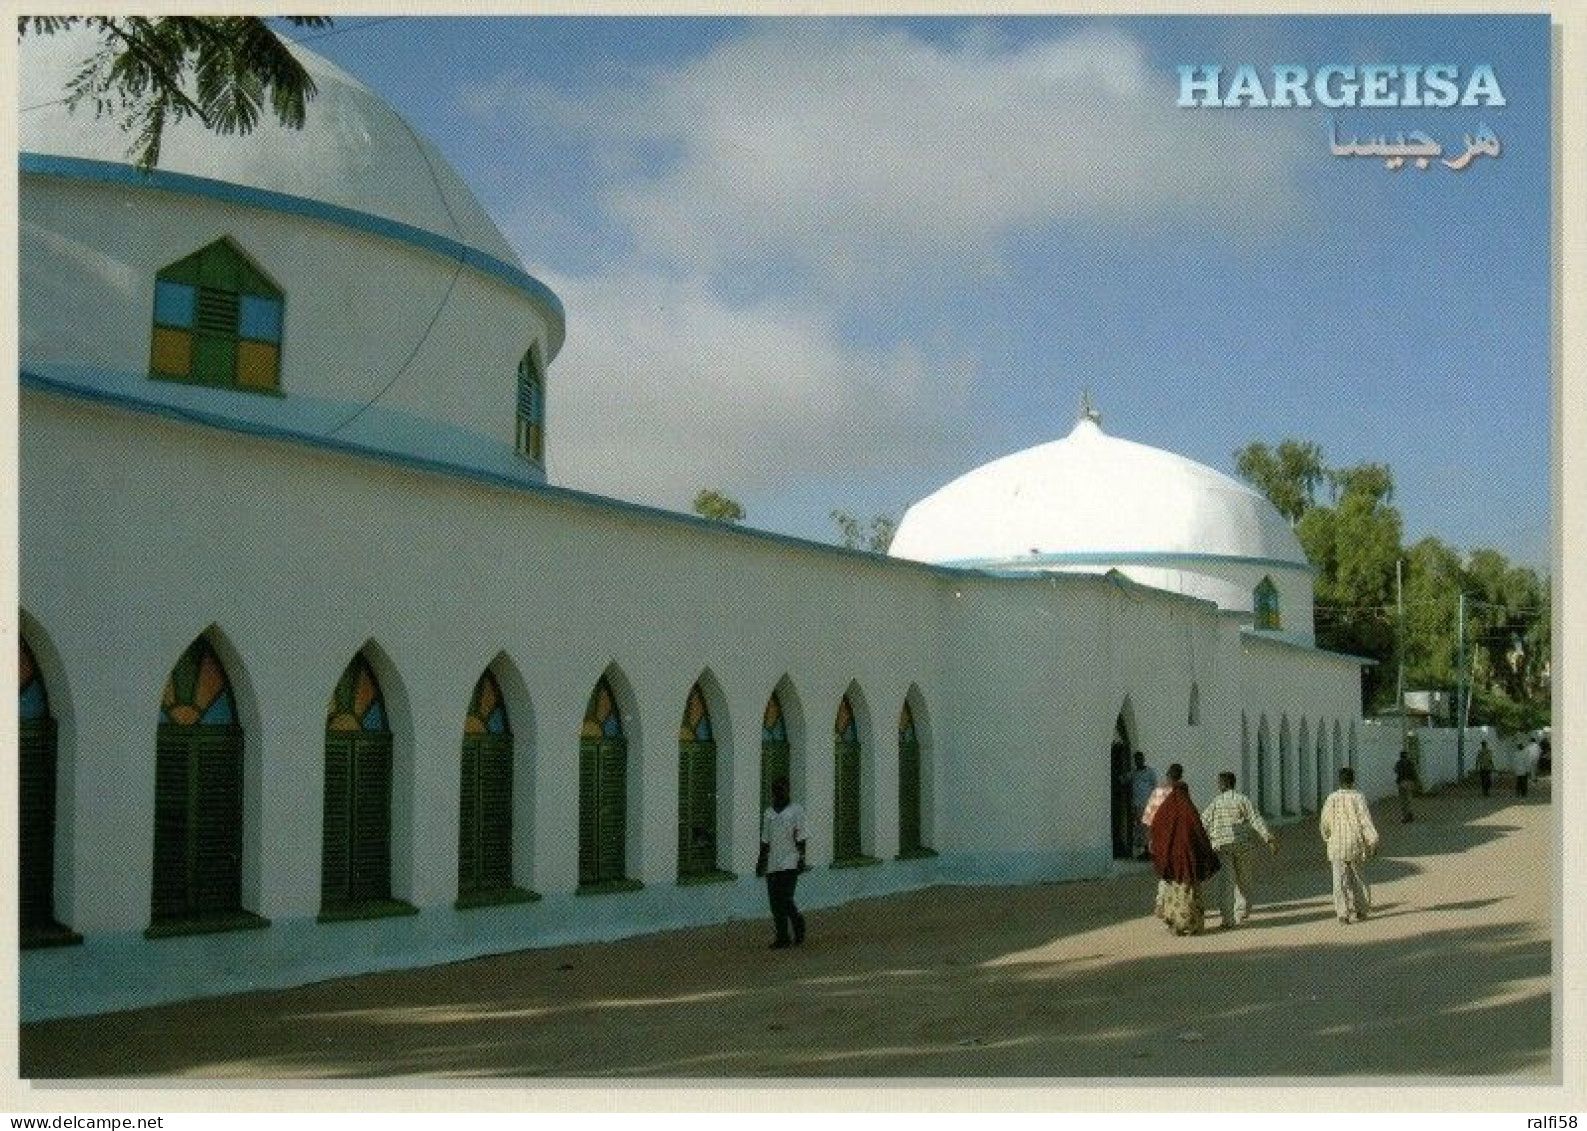 1 AK Somaliland * Ansicht Von Hargeisa - Gilt Als Hauptstadt Des Seit 1991 De Facto Unabhängigen Somaliland * - Somalie